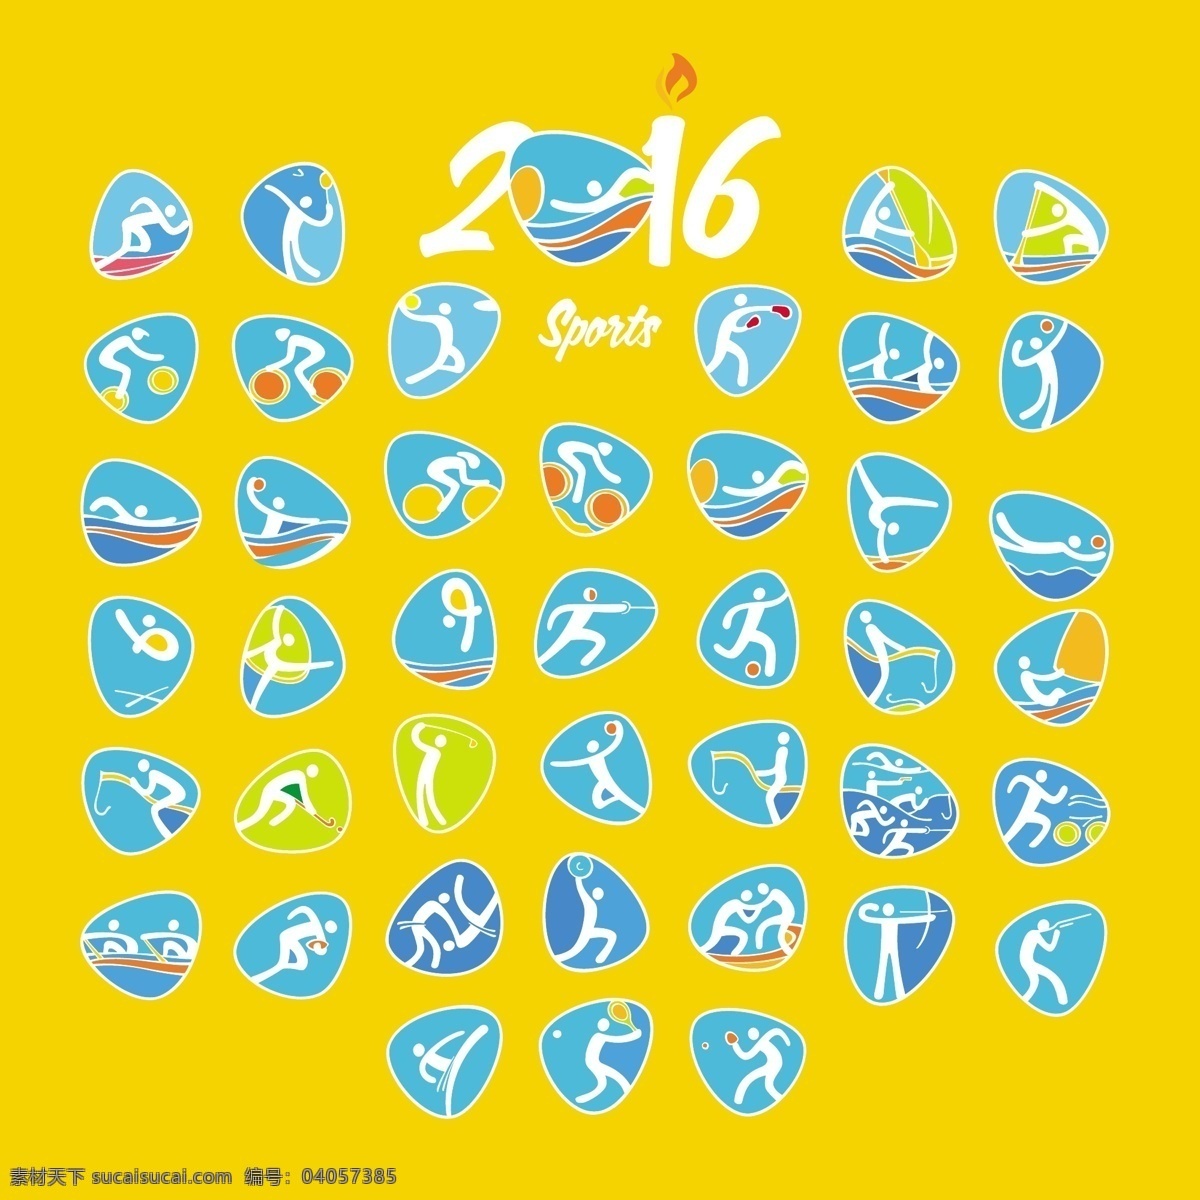 里约 夏季 奥运会 符号 夏季奥运会 奥运会符号 rio 黄色